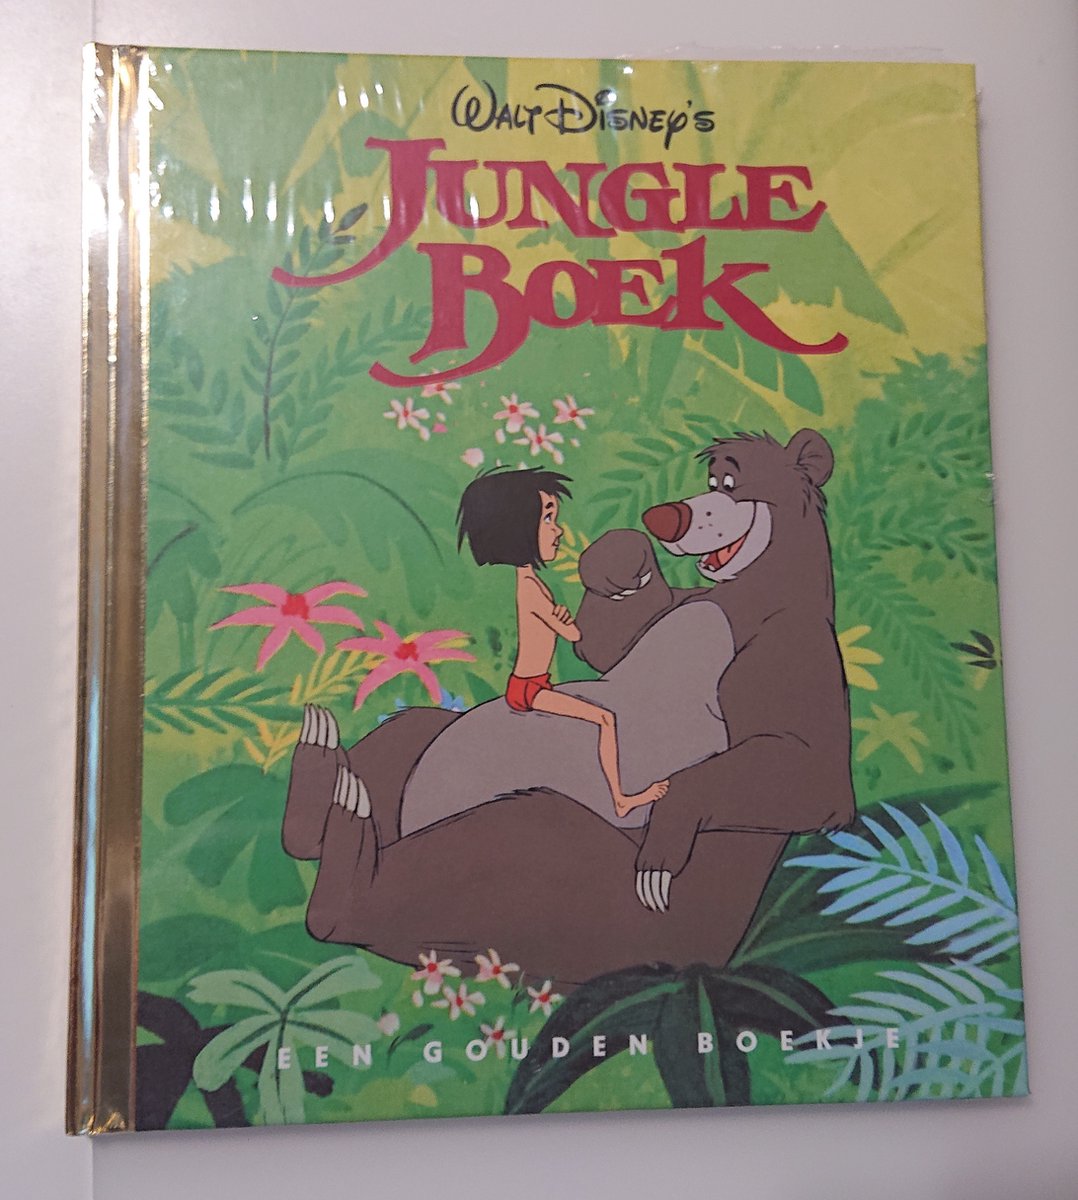 Disney - Jungle Boek - een gouden boekje